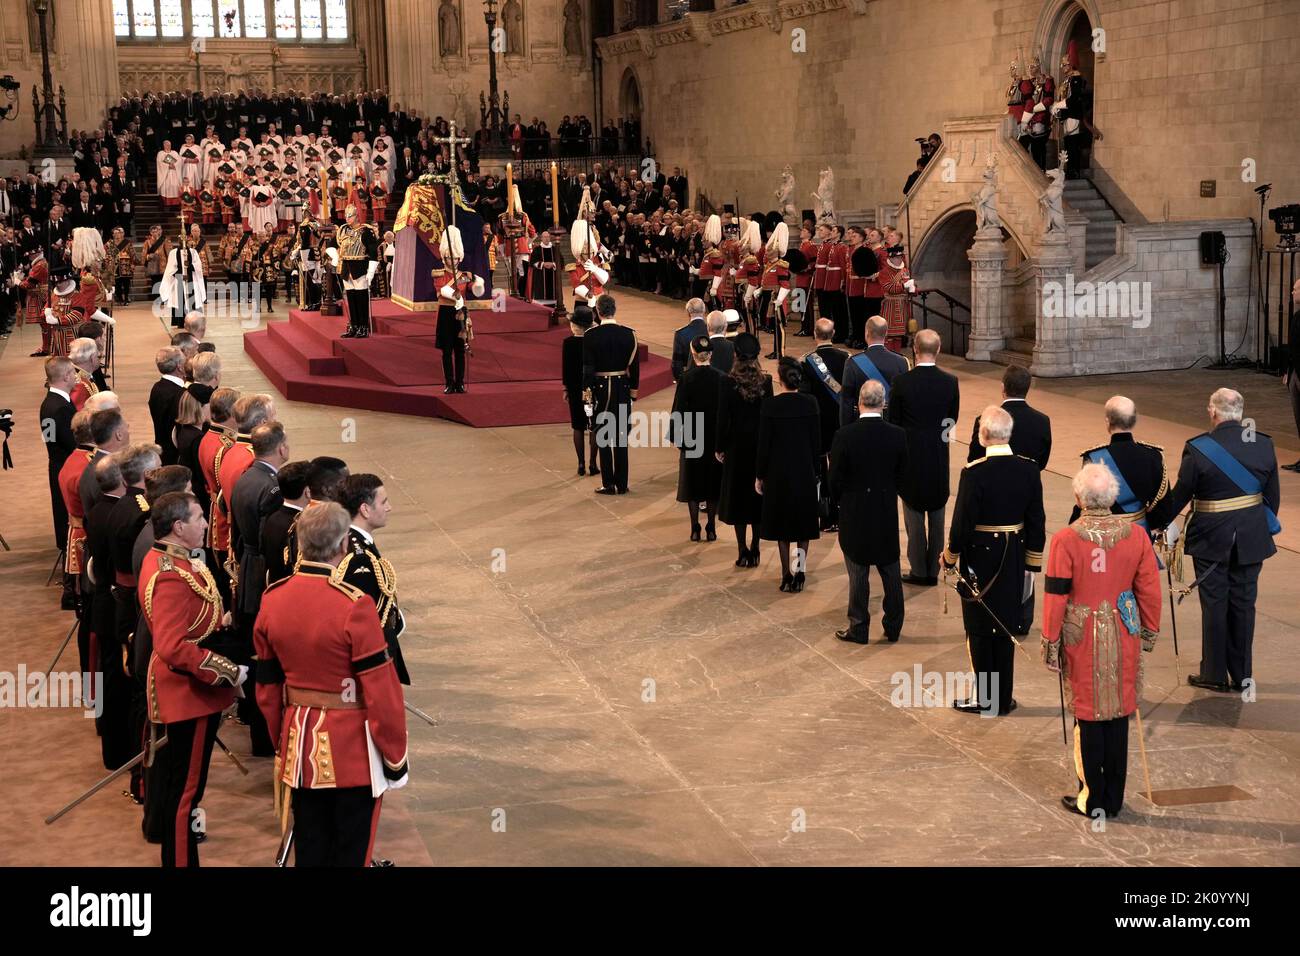 Der Sarg von Königin Elizabeth II., drapiert im Royal Standard mit der Imperial State Crown auf der Oberseite, liegt auf der Katafalque in Westminster Hall, London, wo er vor ihrer Beerdigung am Montag in einem Zustand liegen wird. Bilddatum: Mittwoch, 14. September 2022. Stockfoto